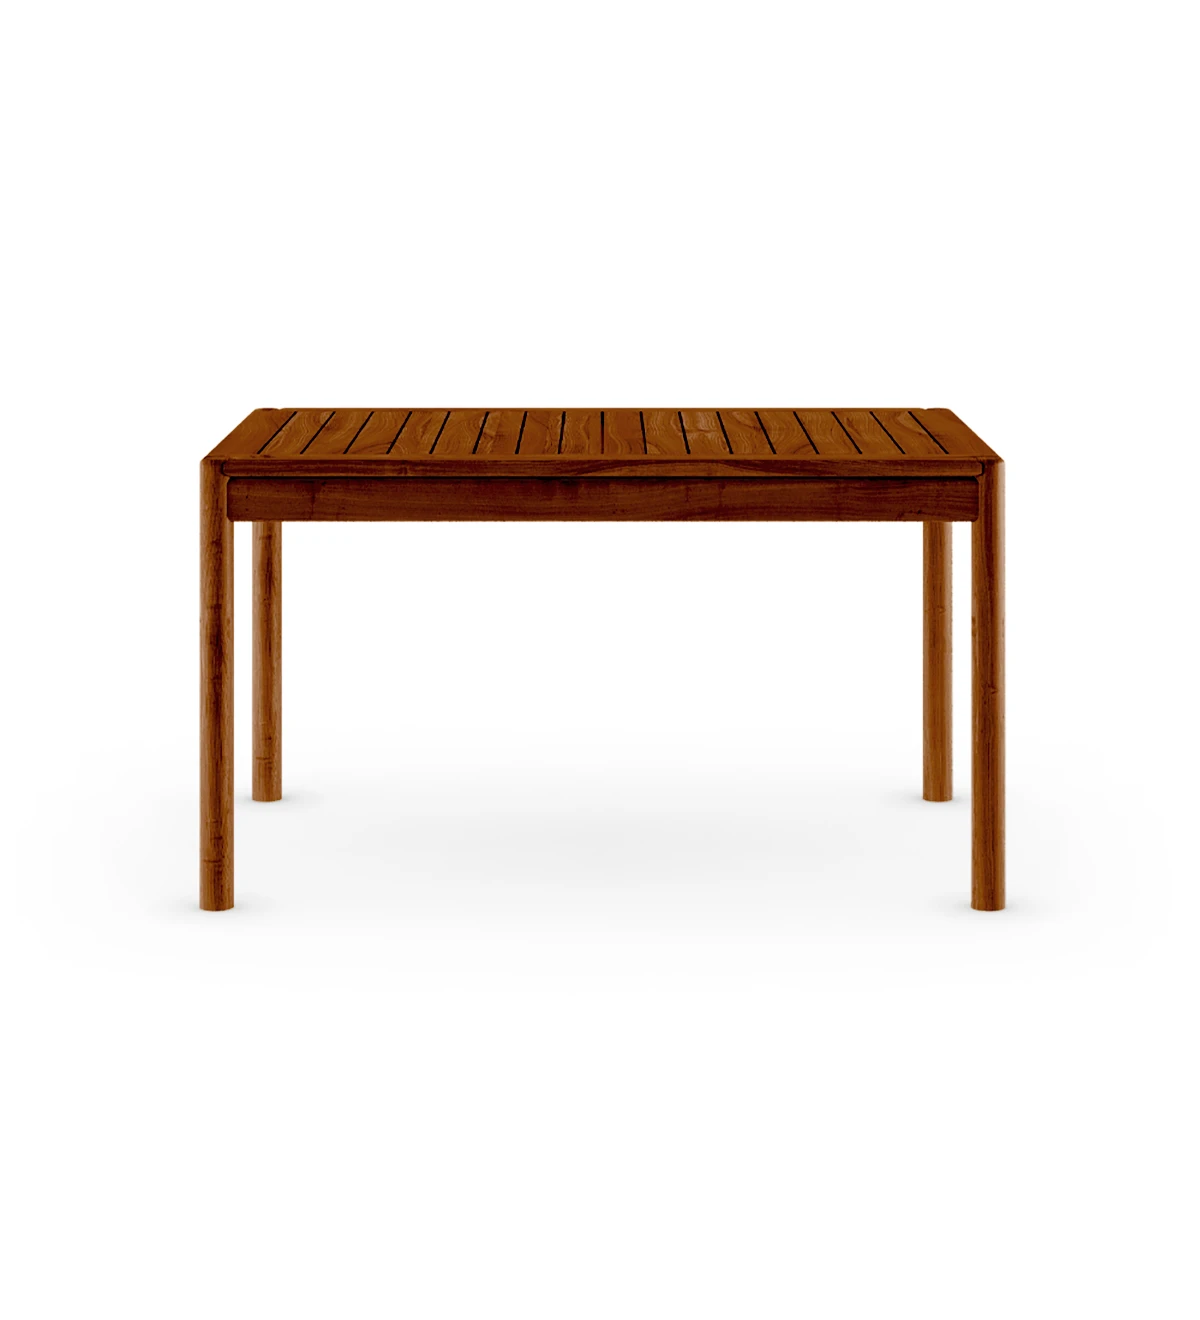 Natural wood rectangular dining table